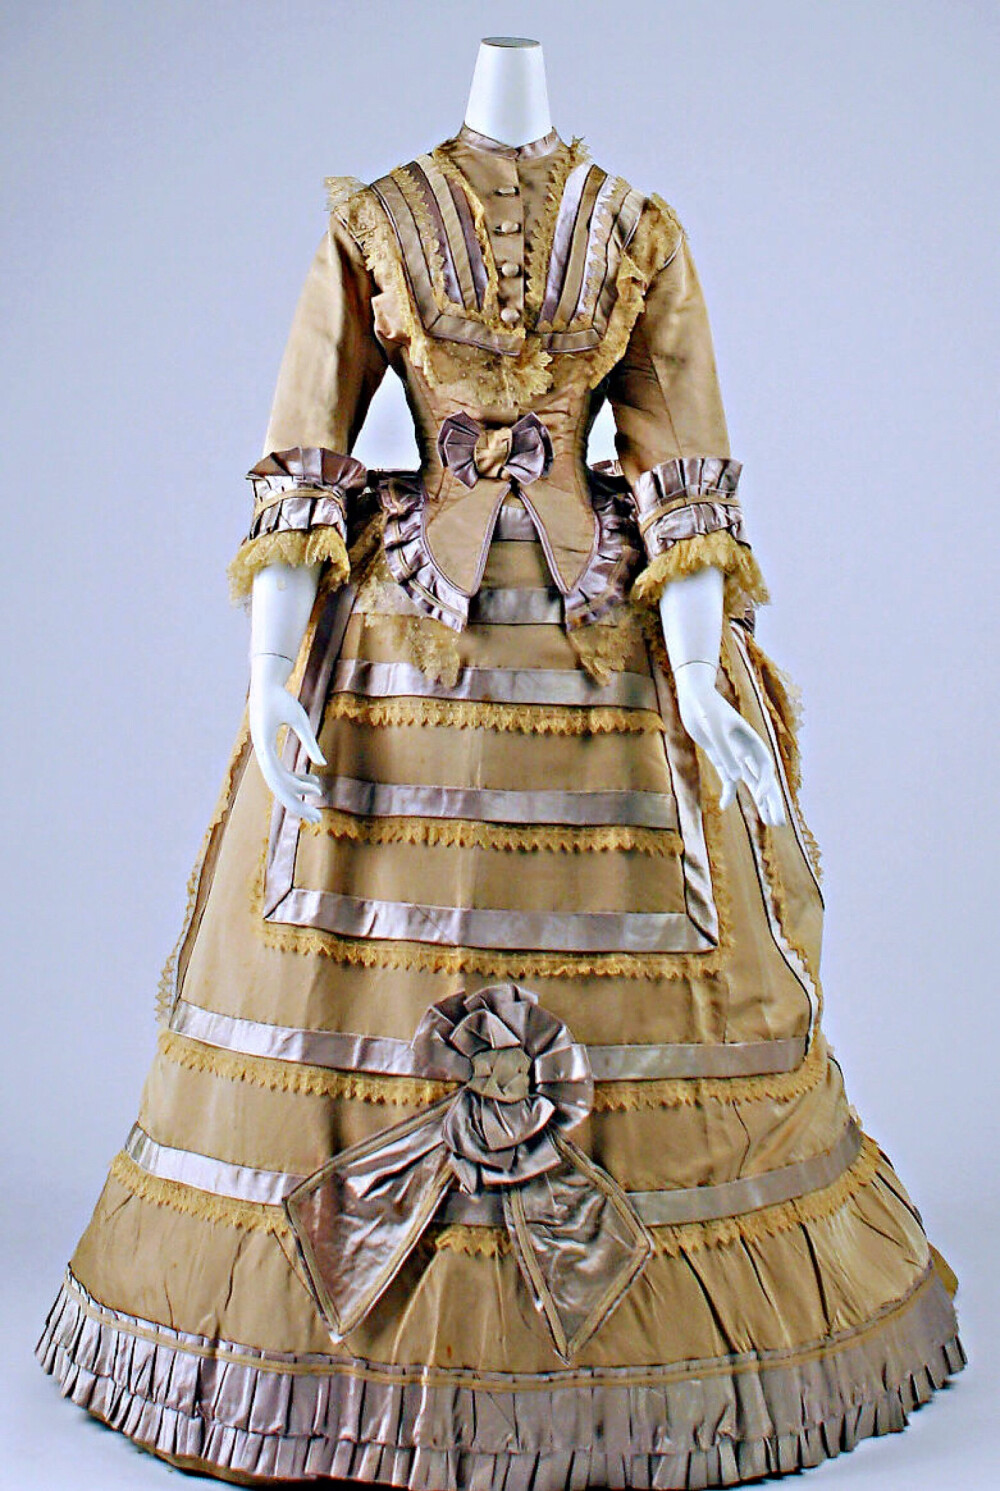 法国丝绸礼服 1865-70 大都会艺术博物馆收藏